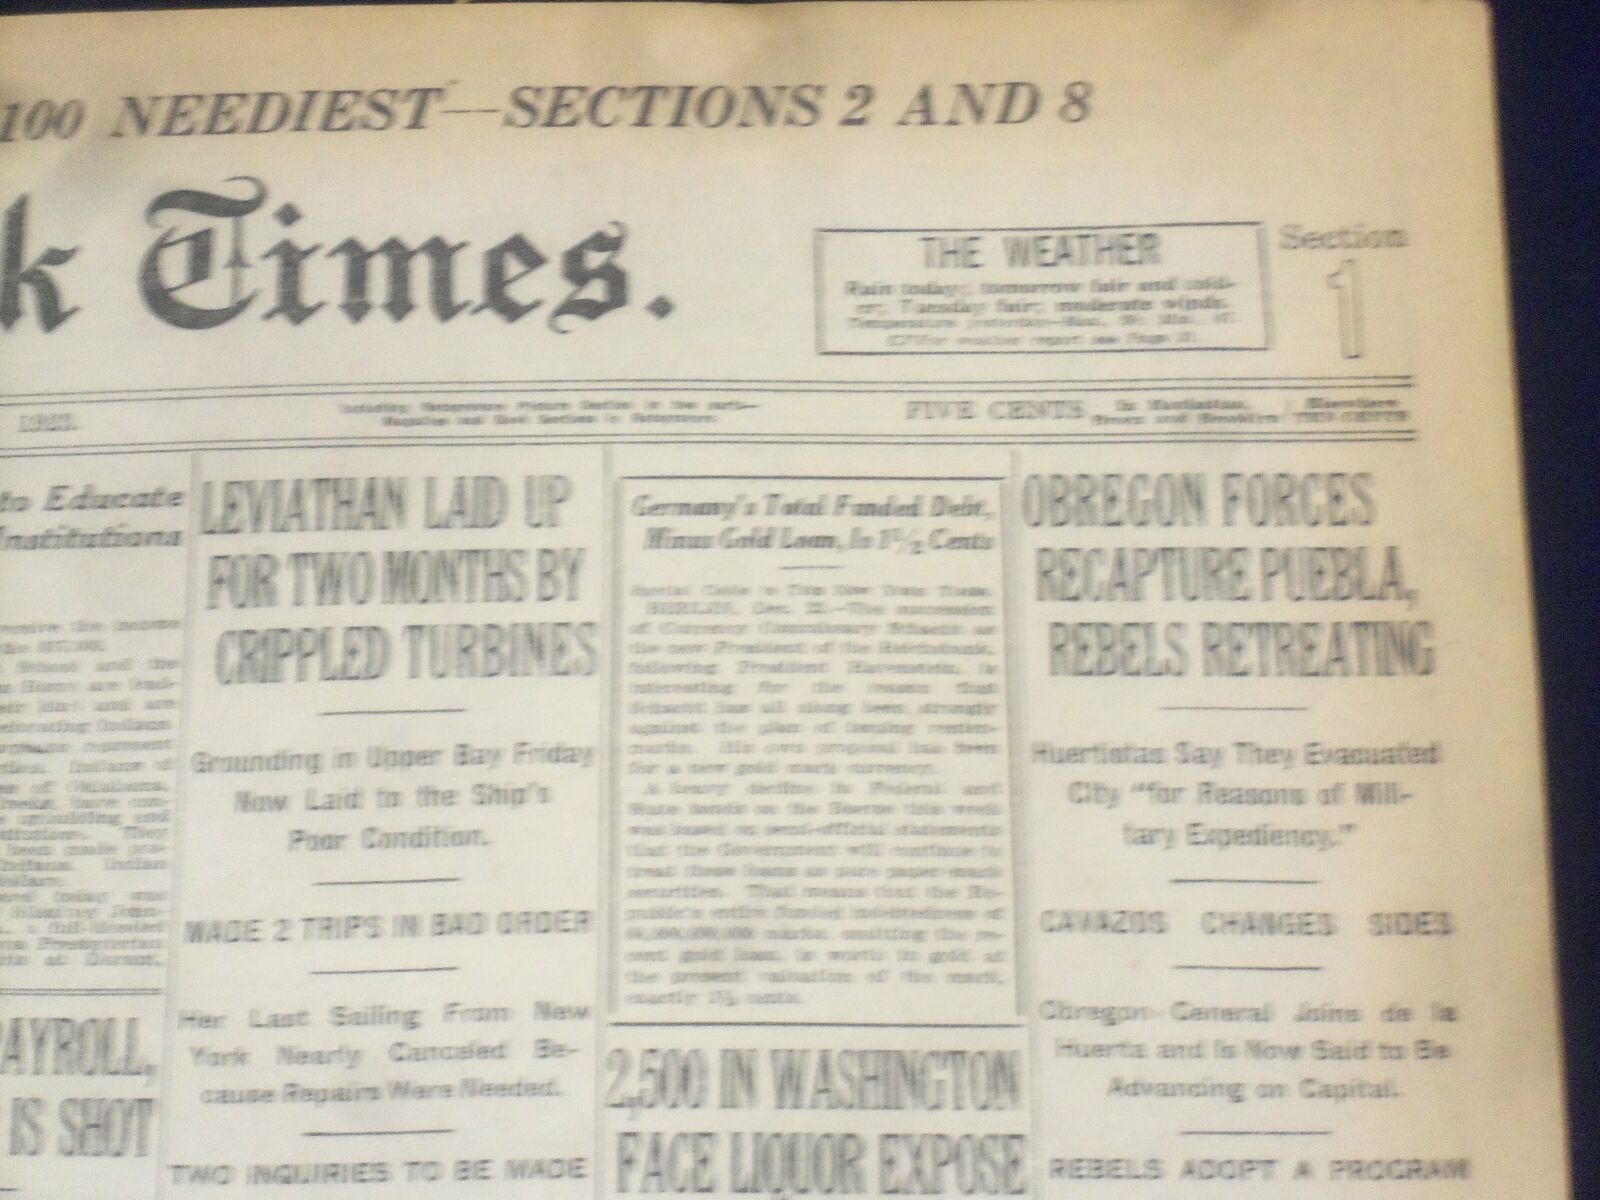 1923 DECEMBER 27 NEW YORK TIMES - OBREGON FORCES RECAPTURE PUEBLA - NT 9227